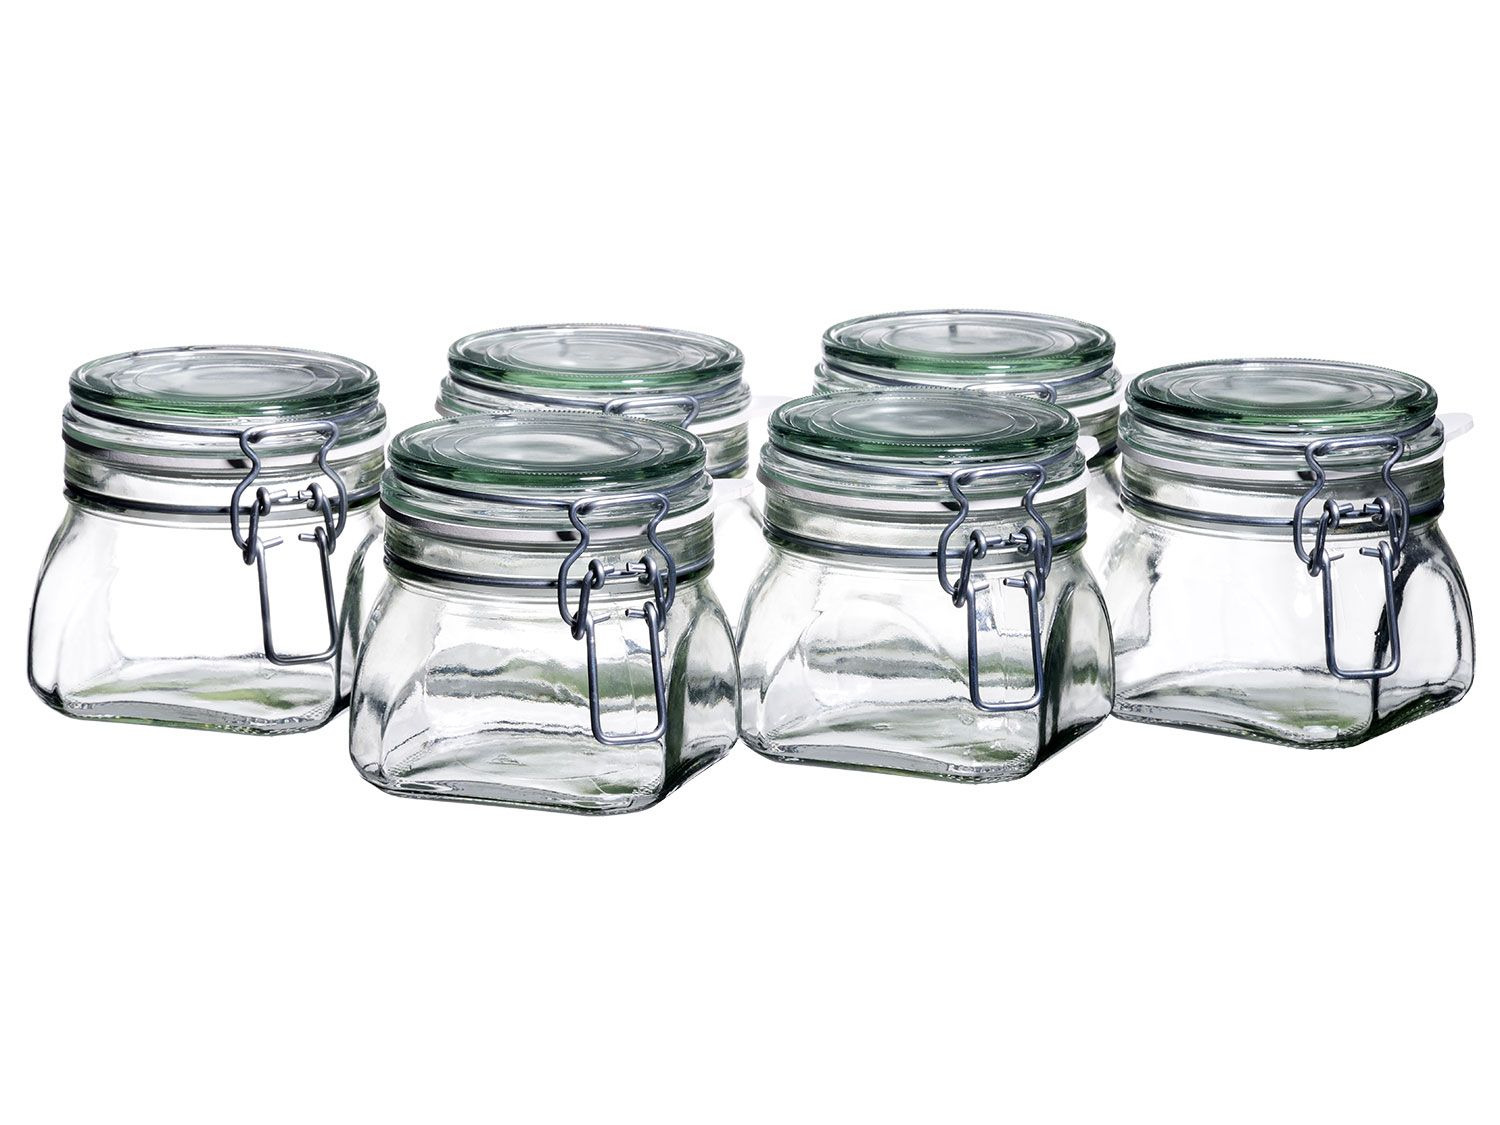 Dosen Klemme für Küche Einmachzange Greifer Kahasa Einmachglasheber mit Gummigriffen langer Griff Heber Edelstahl kompatibel mit breiter Öffnung und regulären Gläsern für Zuhause